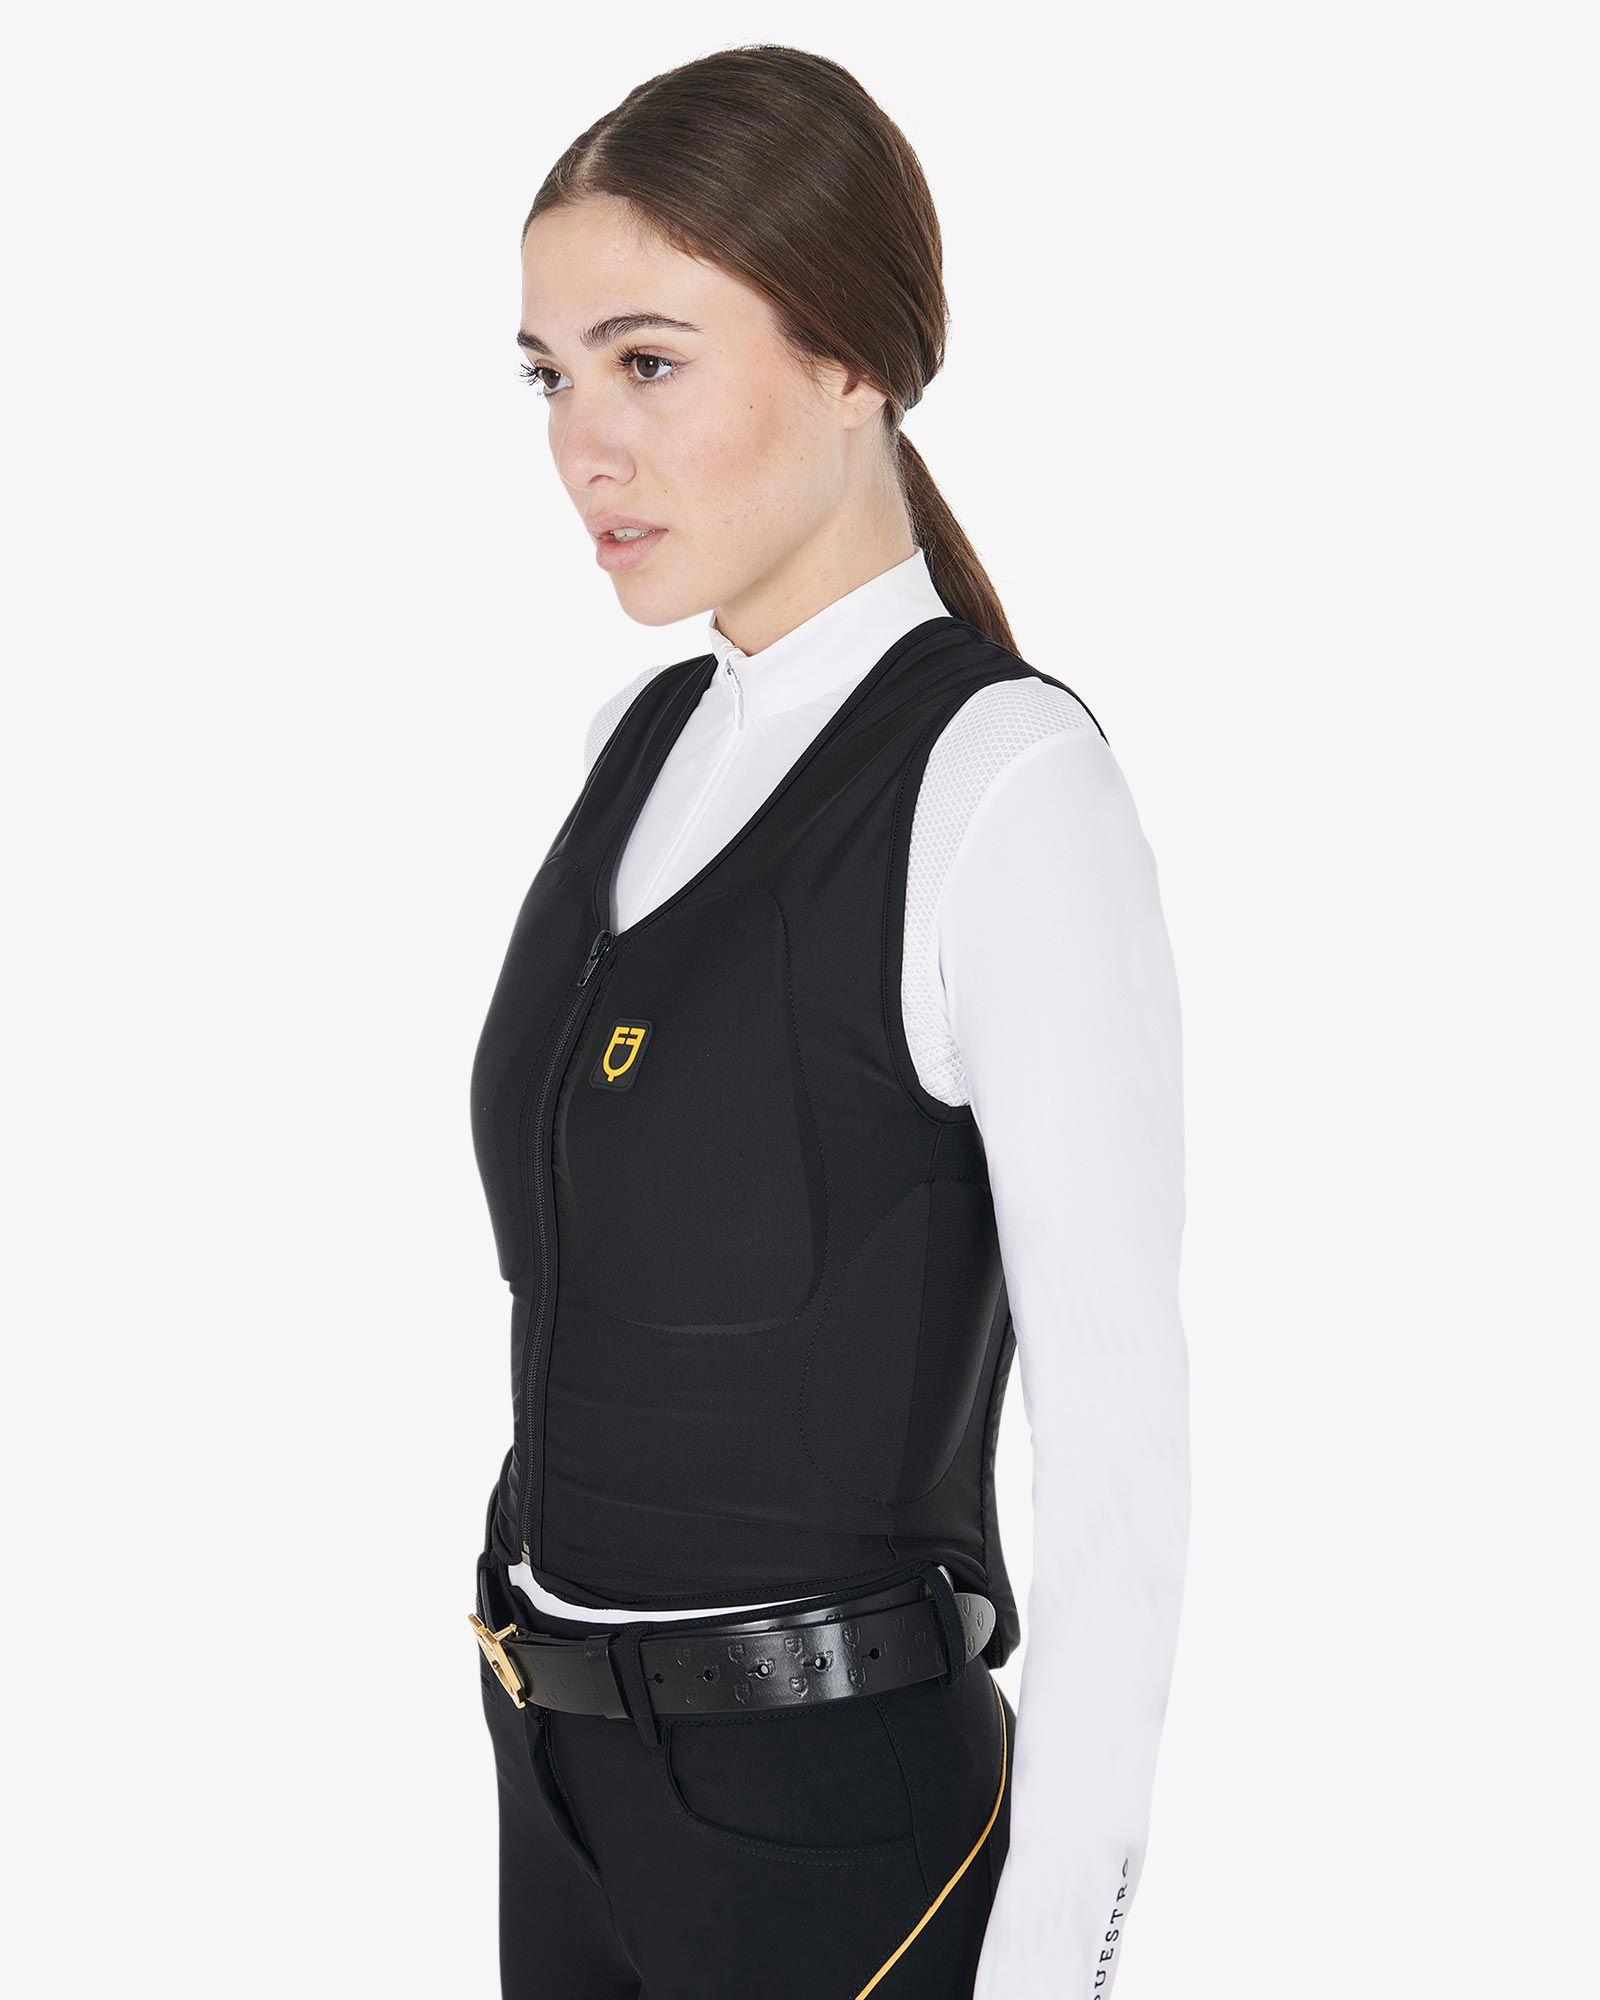 PROMOZIONE Gilet adulti salvaschiena Safety vest Pro Adult con protezione laterale per equitazione X7A XS - foto 10